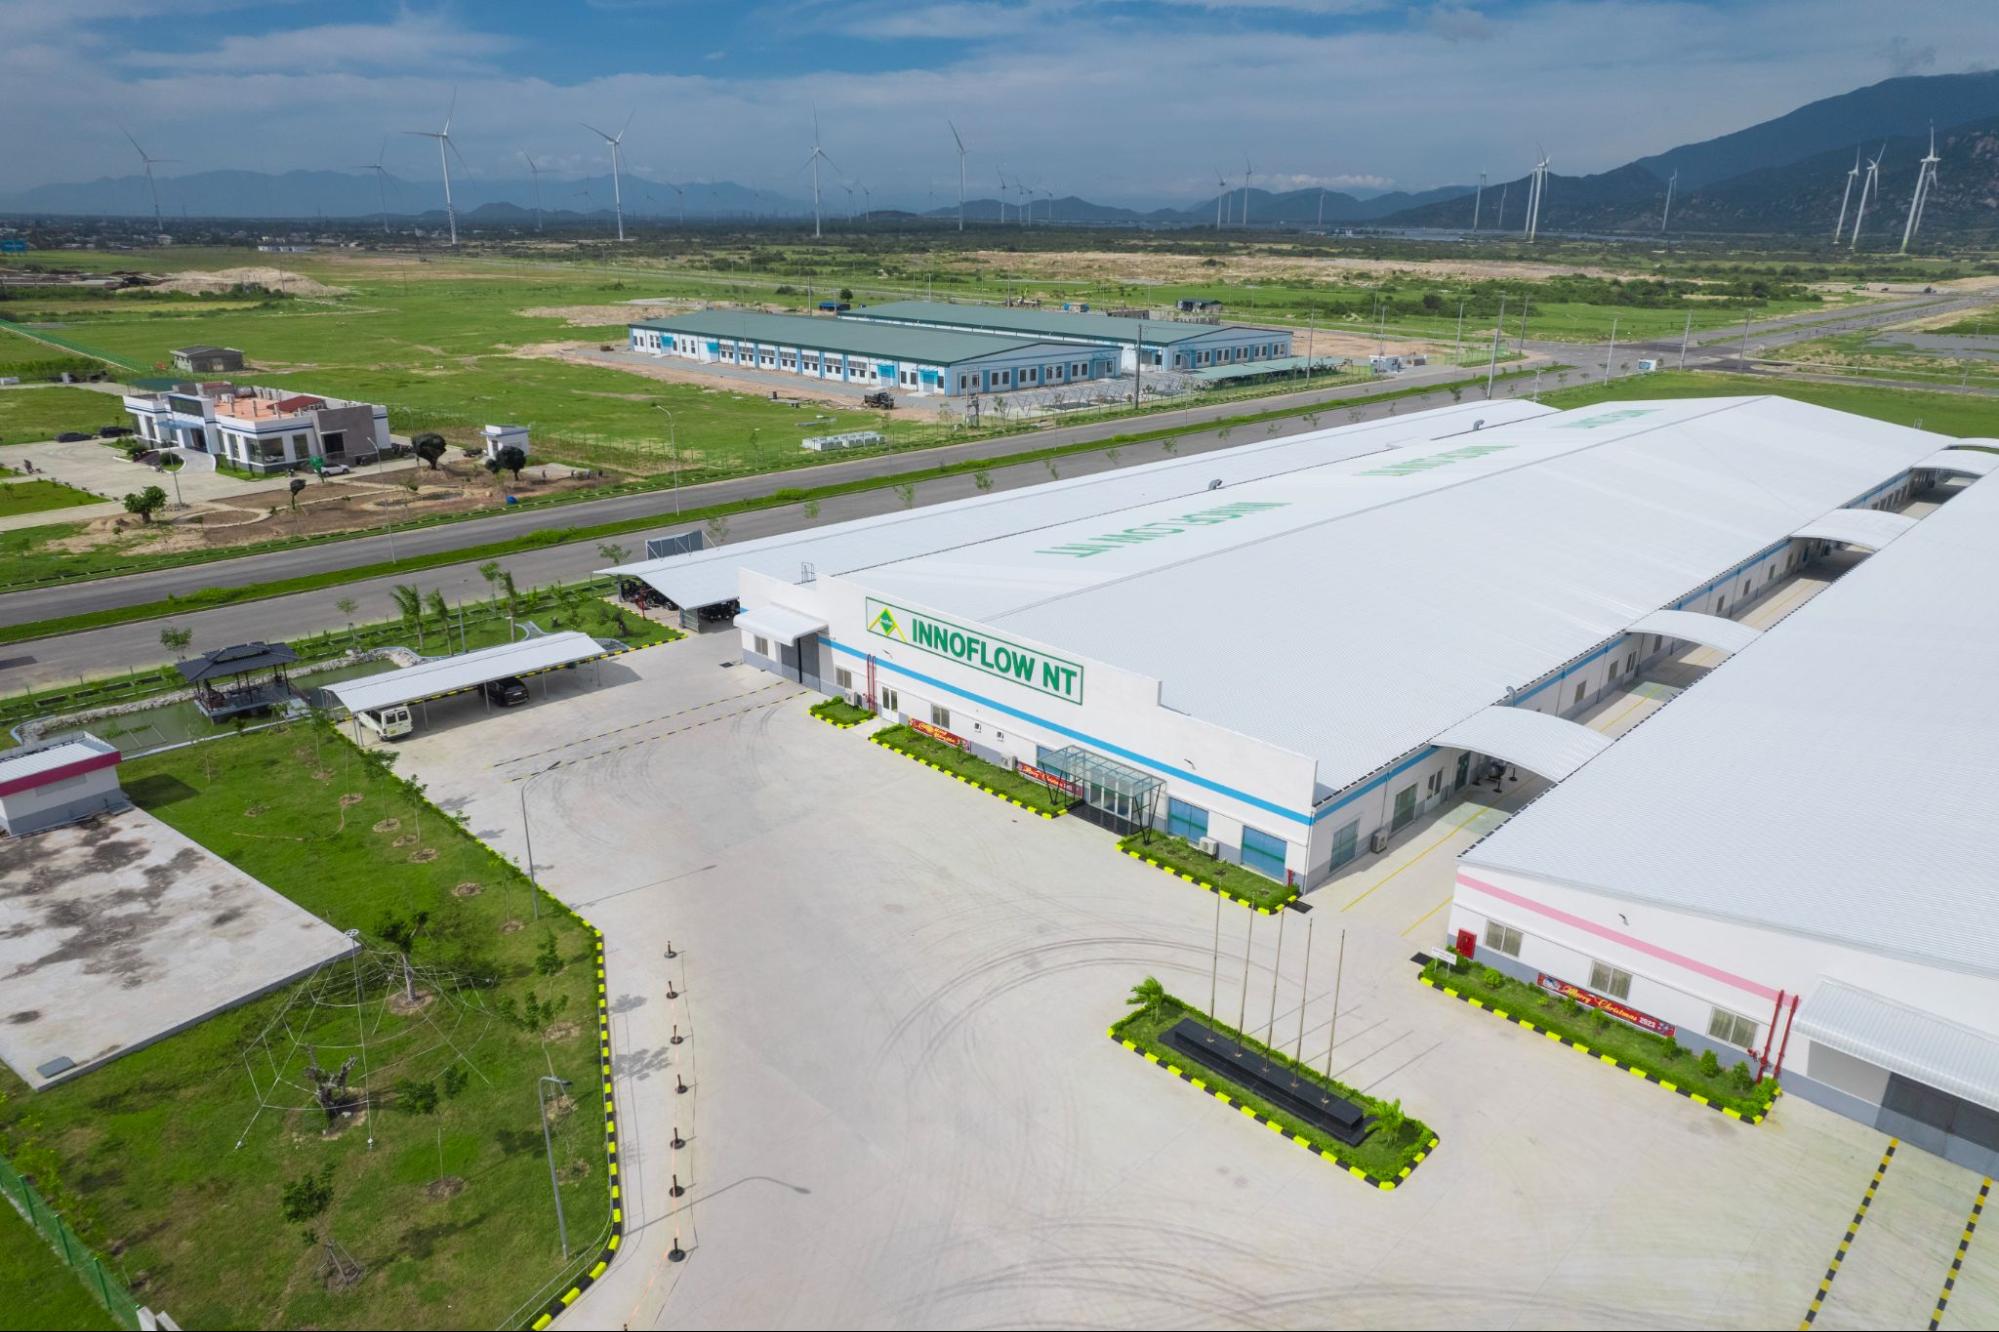 Nhà máy sản xuất thú nhồi bông của Công ty Innoflow NT (Hàn Quốc) tại KCN Du Long